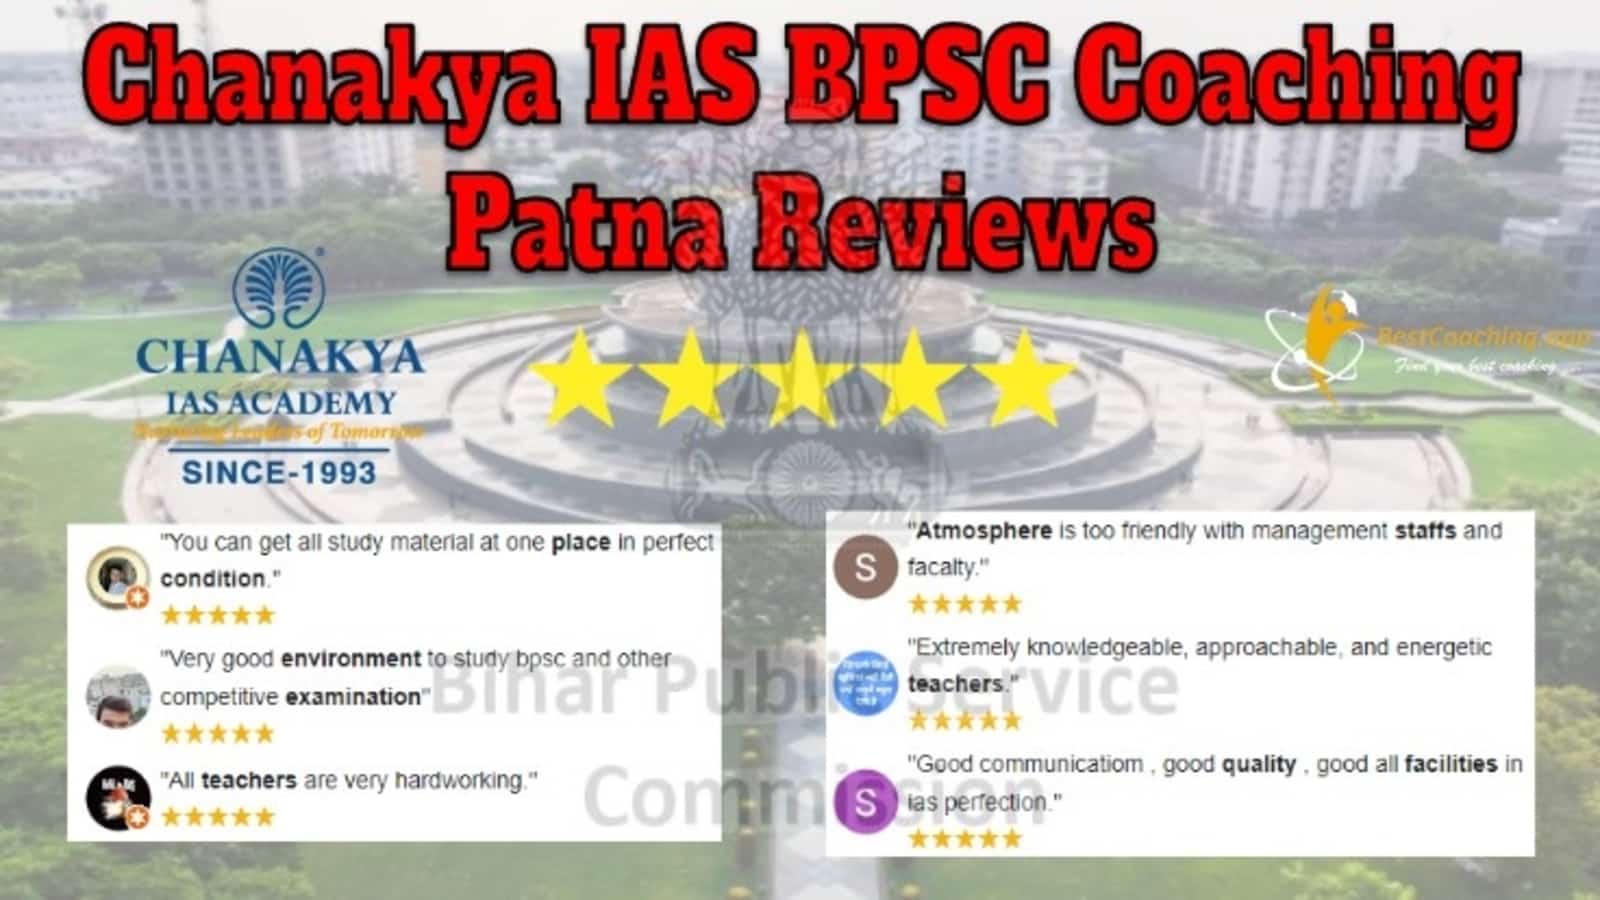 Chanakya IAS BPSC Coaching in Patna Reviews